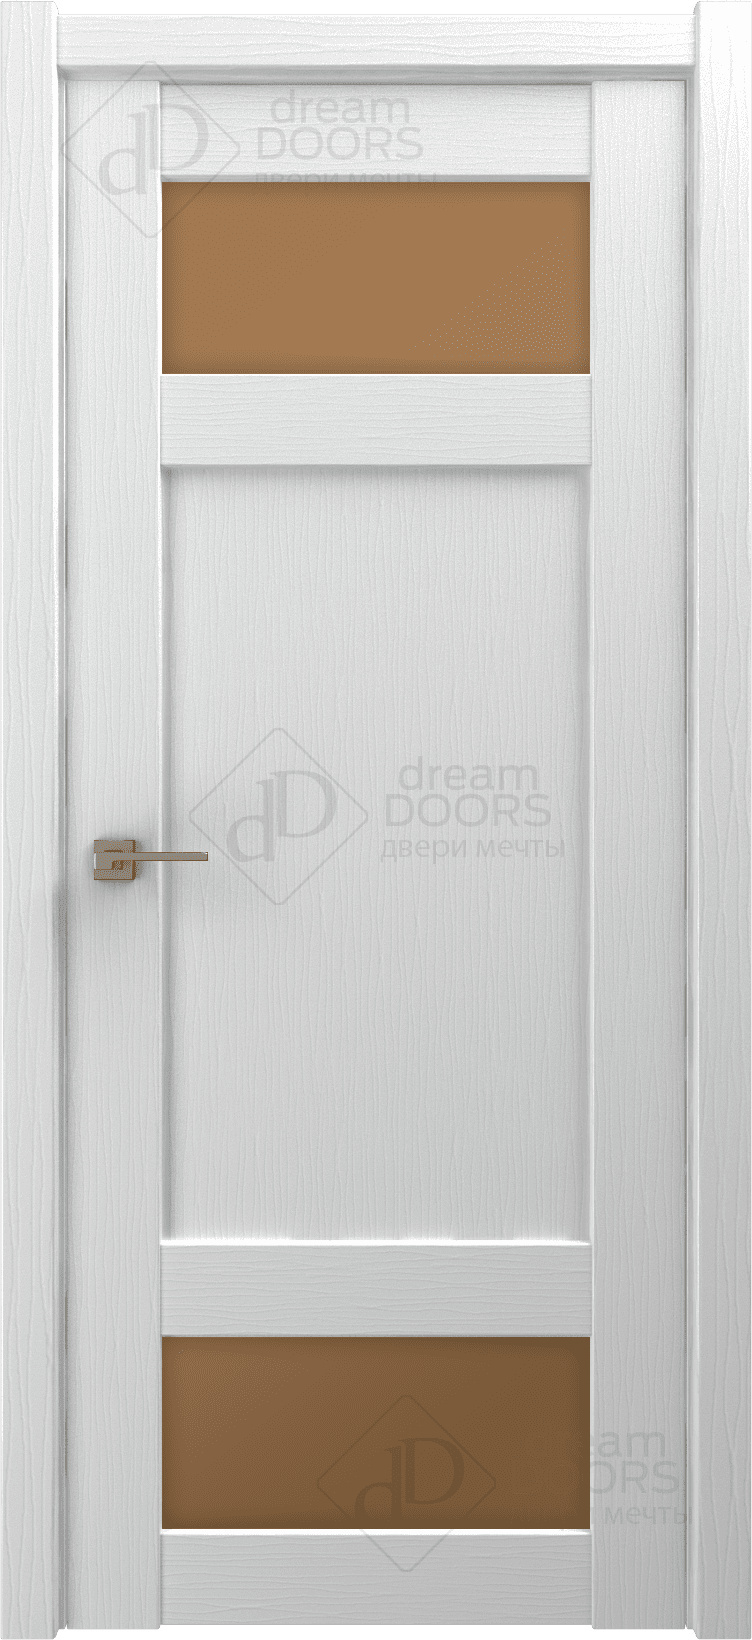 Dream Doors Межкомнатная дверь G24, арт. 18251 - фото №2